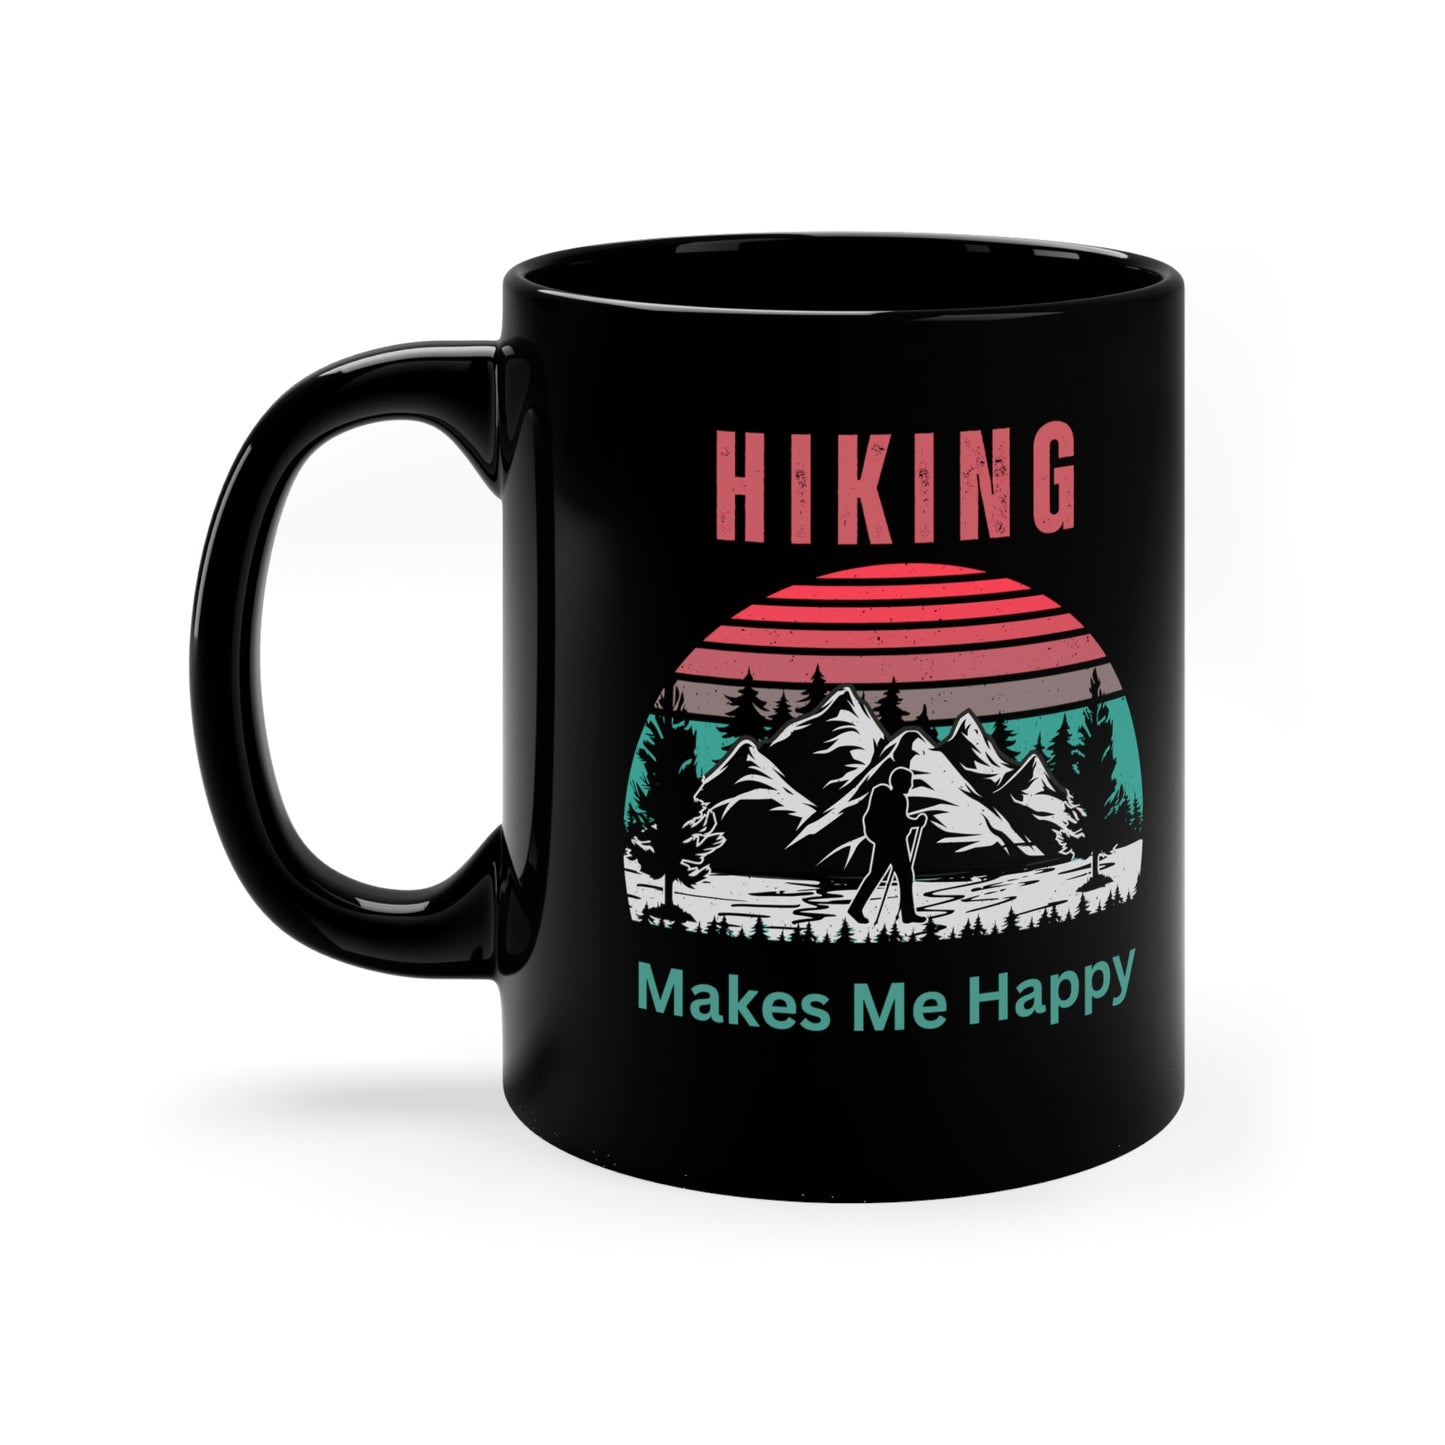 Hiking Makes Me Happy - Retro Coffee Mugs - 11oz Black